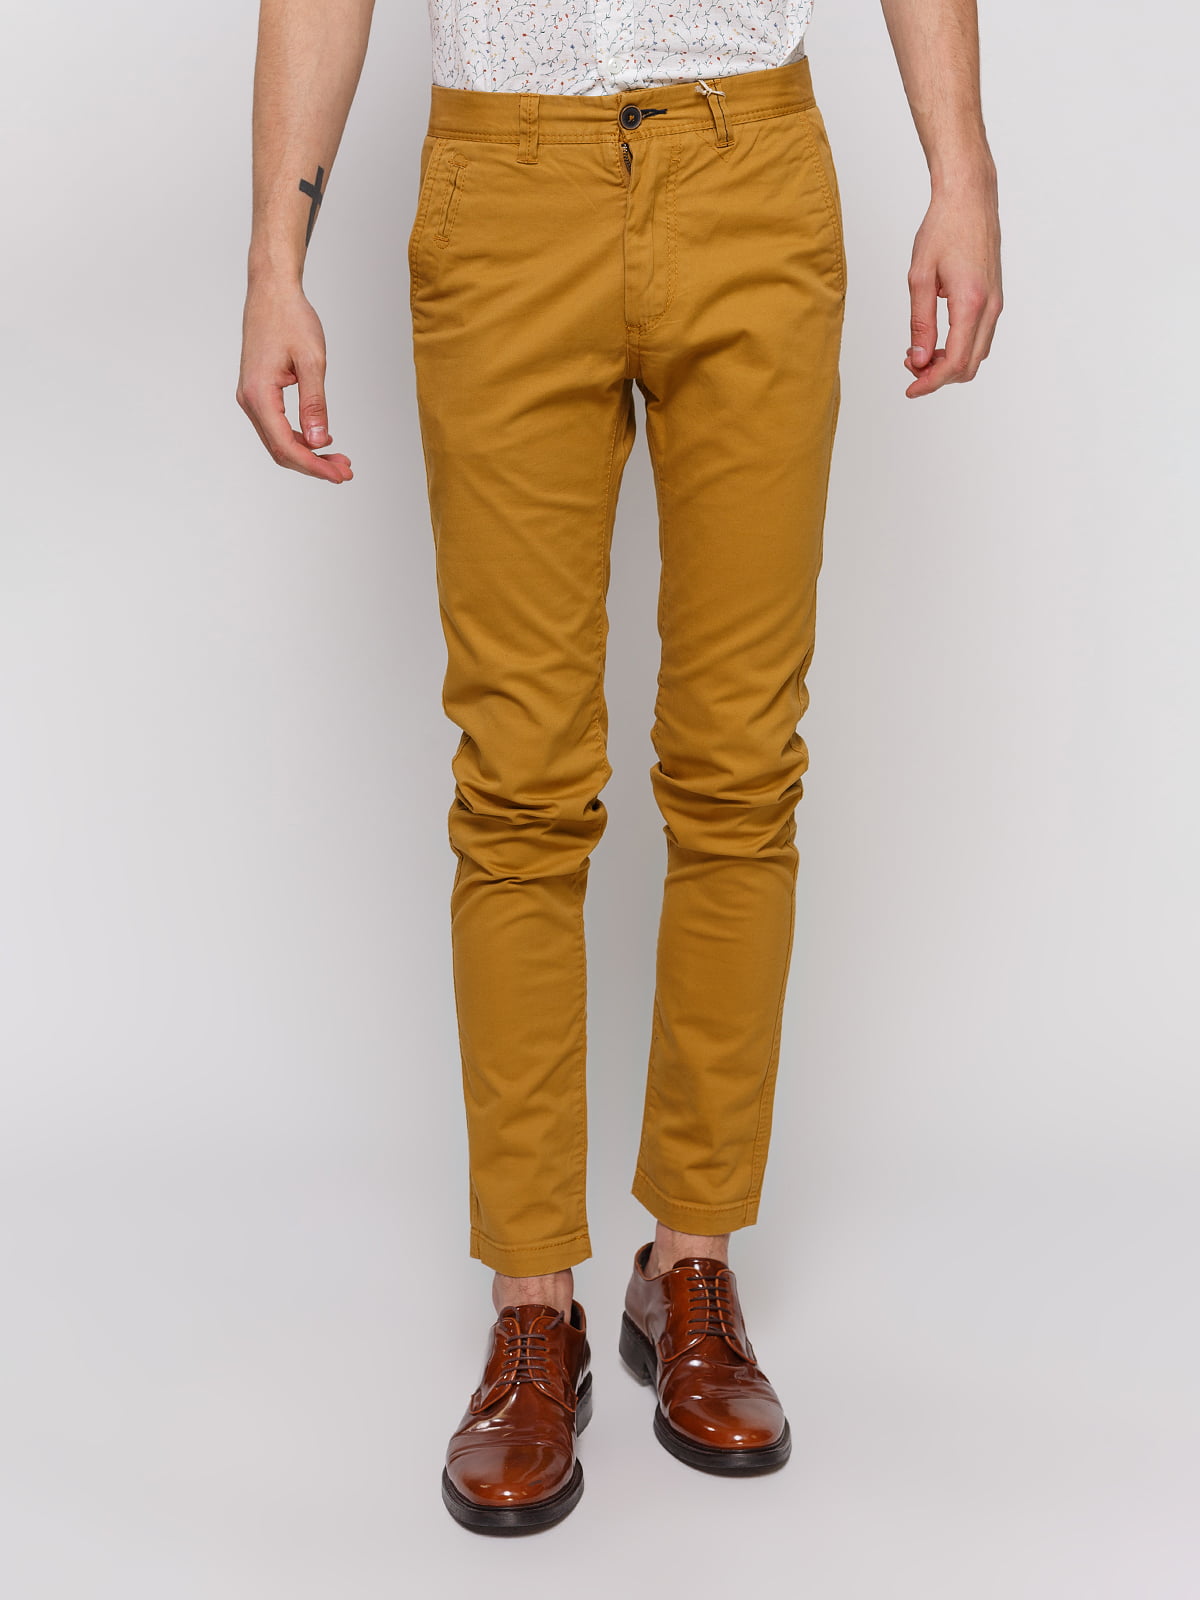 Горчичные джинсы. Горчичные брюки Сислей. Горчичные брюки мужские. Штаны горчичного цвета мужские. Желтые брюки мужские.